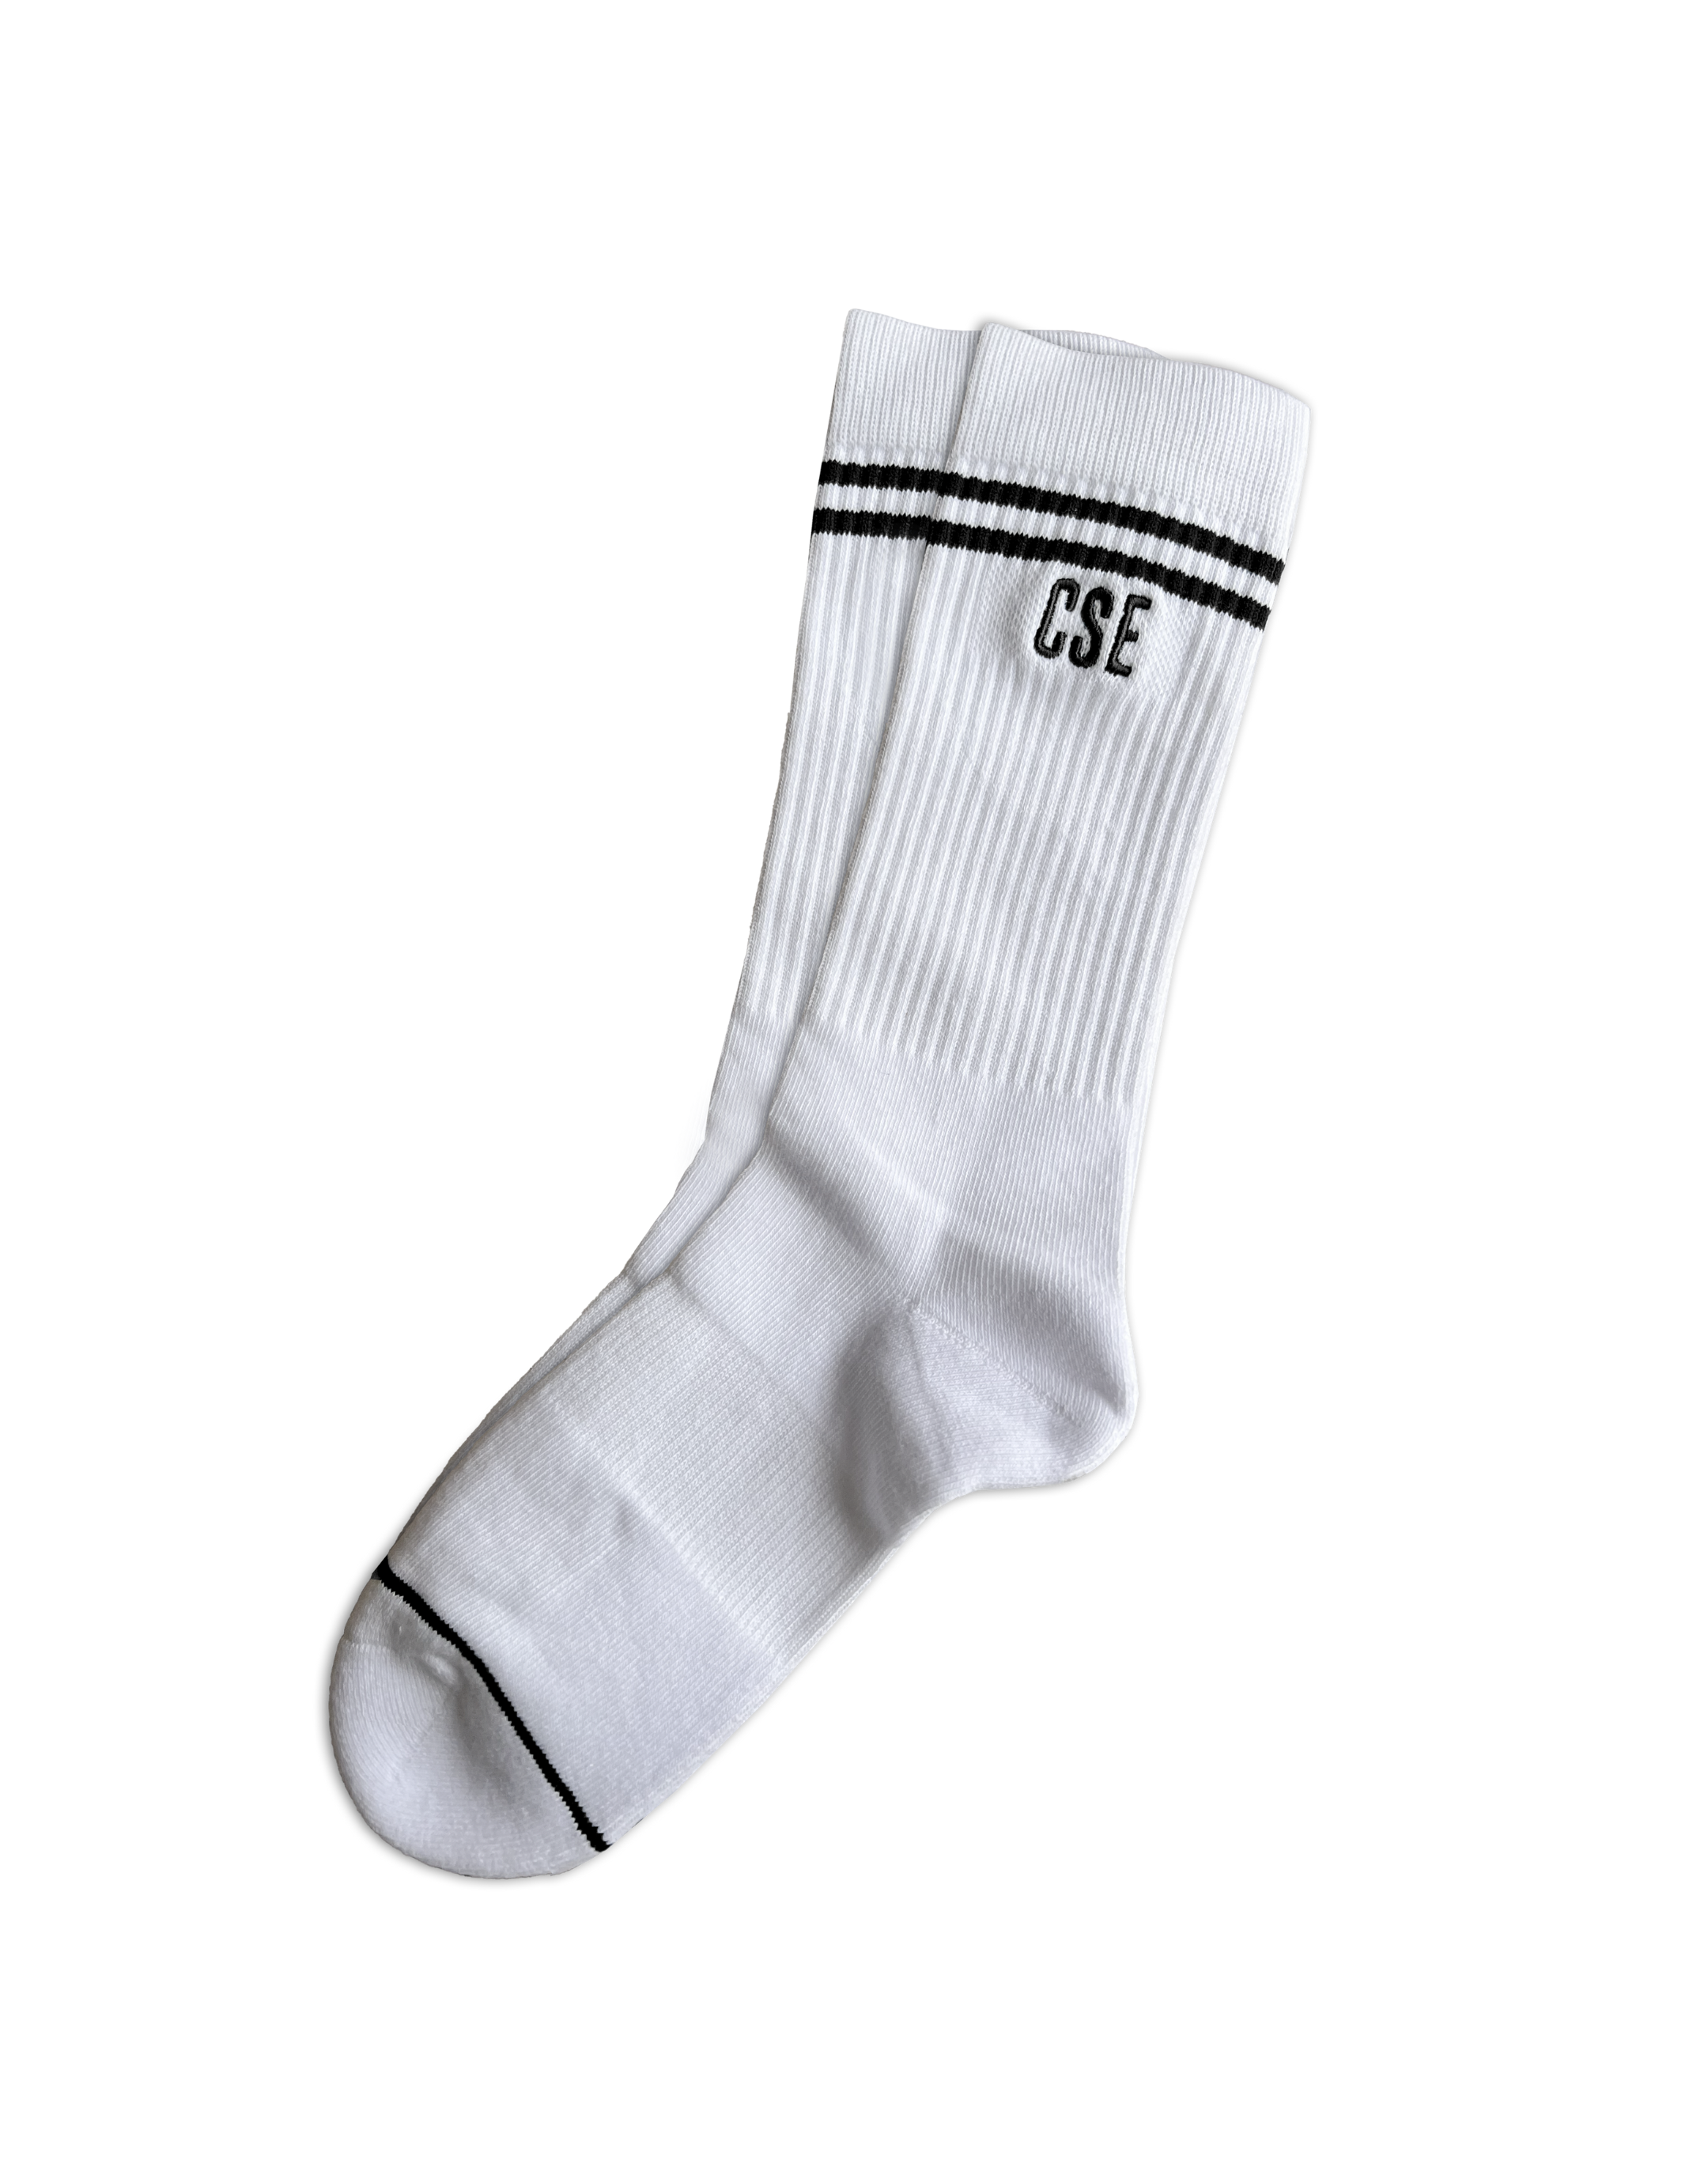 CSE Socks